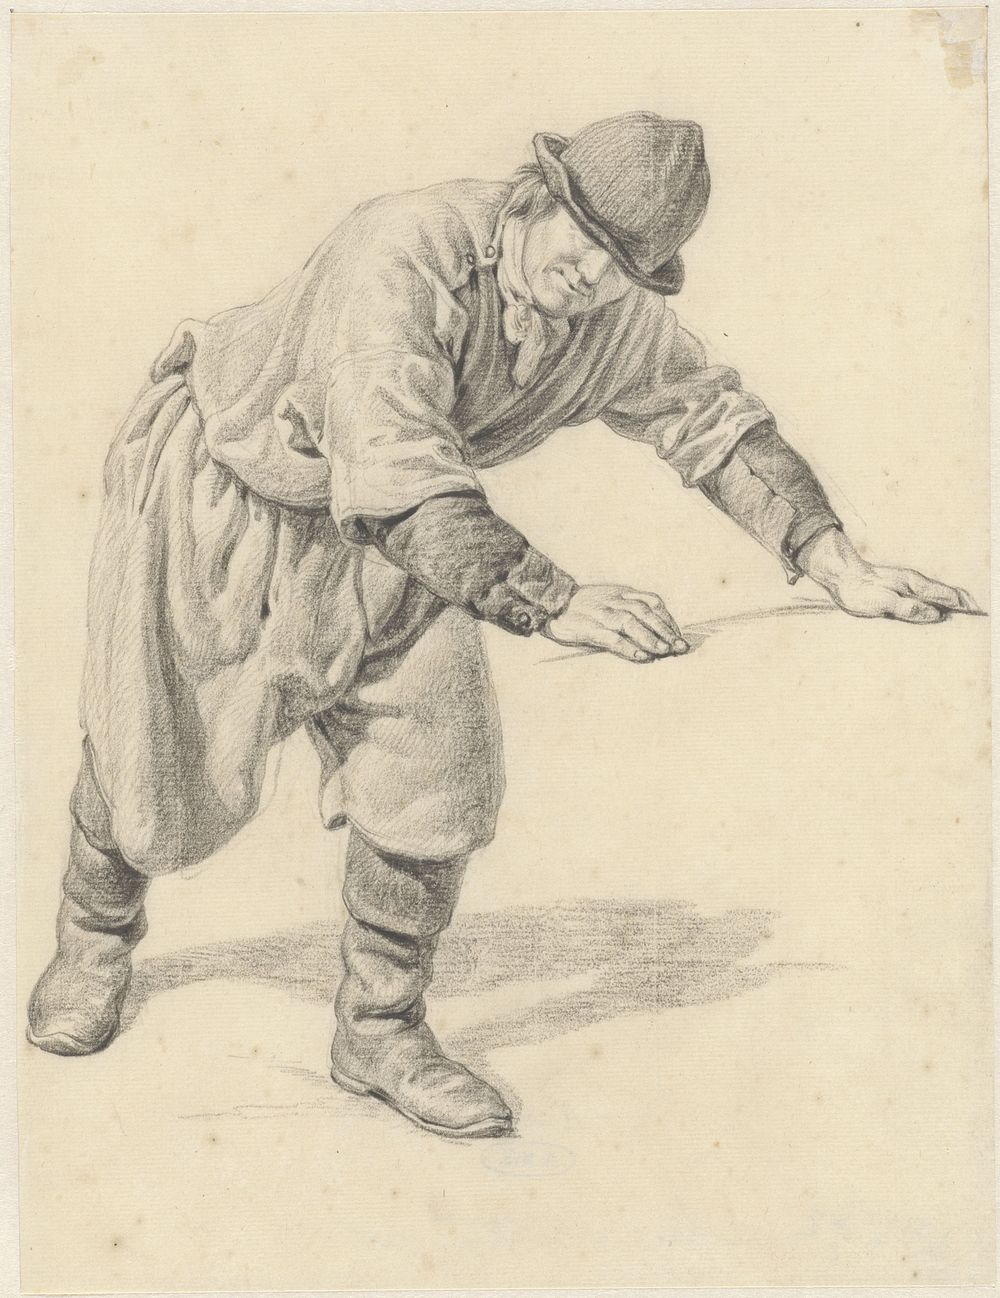 Voorovergebukte man met uitgestrekte armen (1806 - 1831) by Adrianus van der Koogh